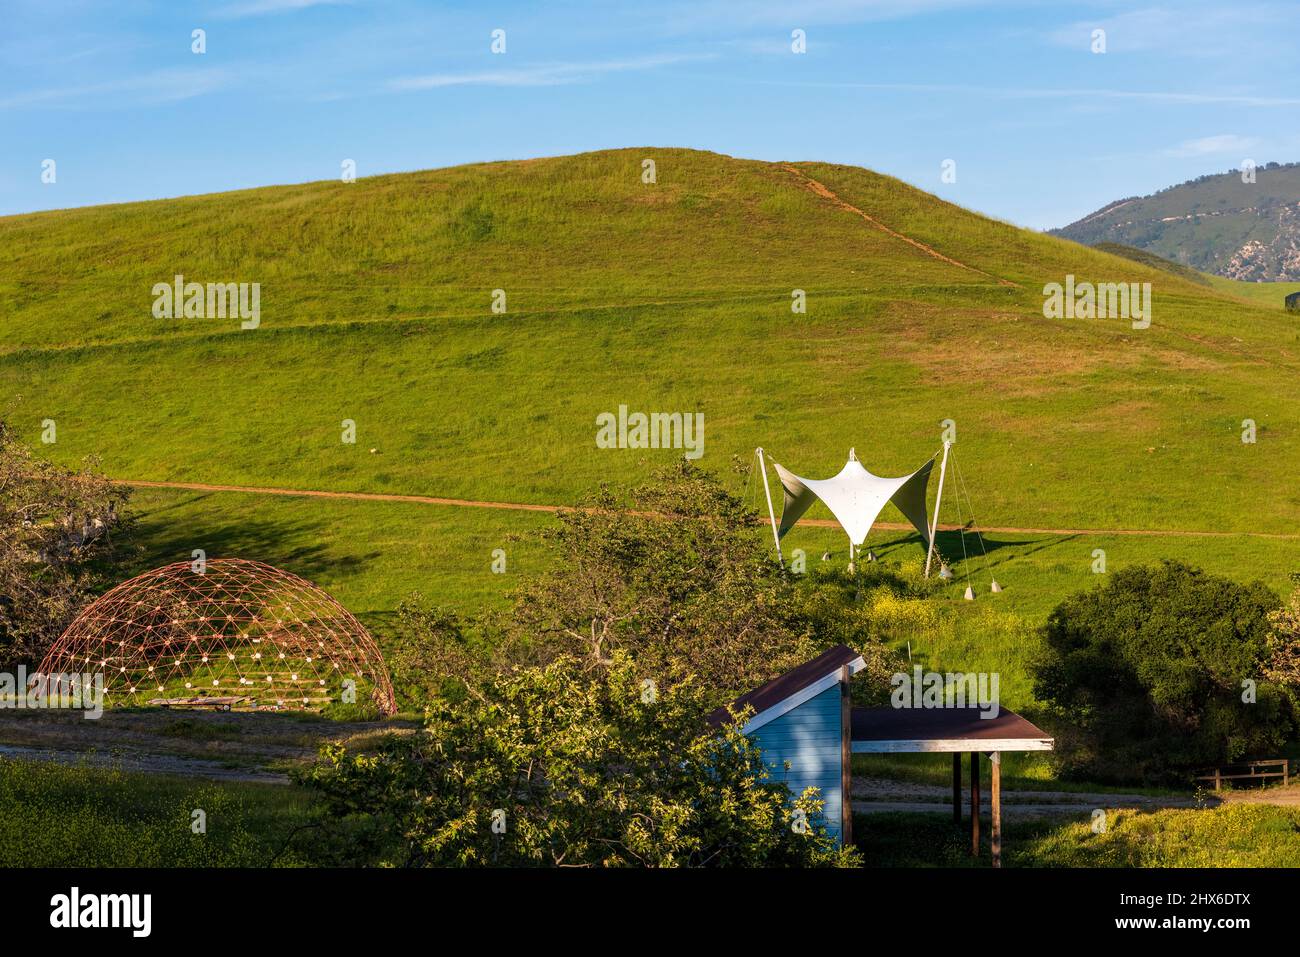 San Luis Obispo, CA /USA - 2 aprile 2016: Verdi colline e strutture sperimentali presso il cimitero di architettura Cal Poly. Foto Stock